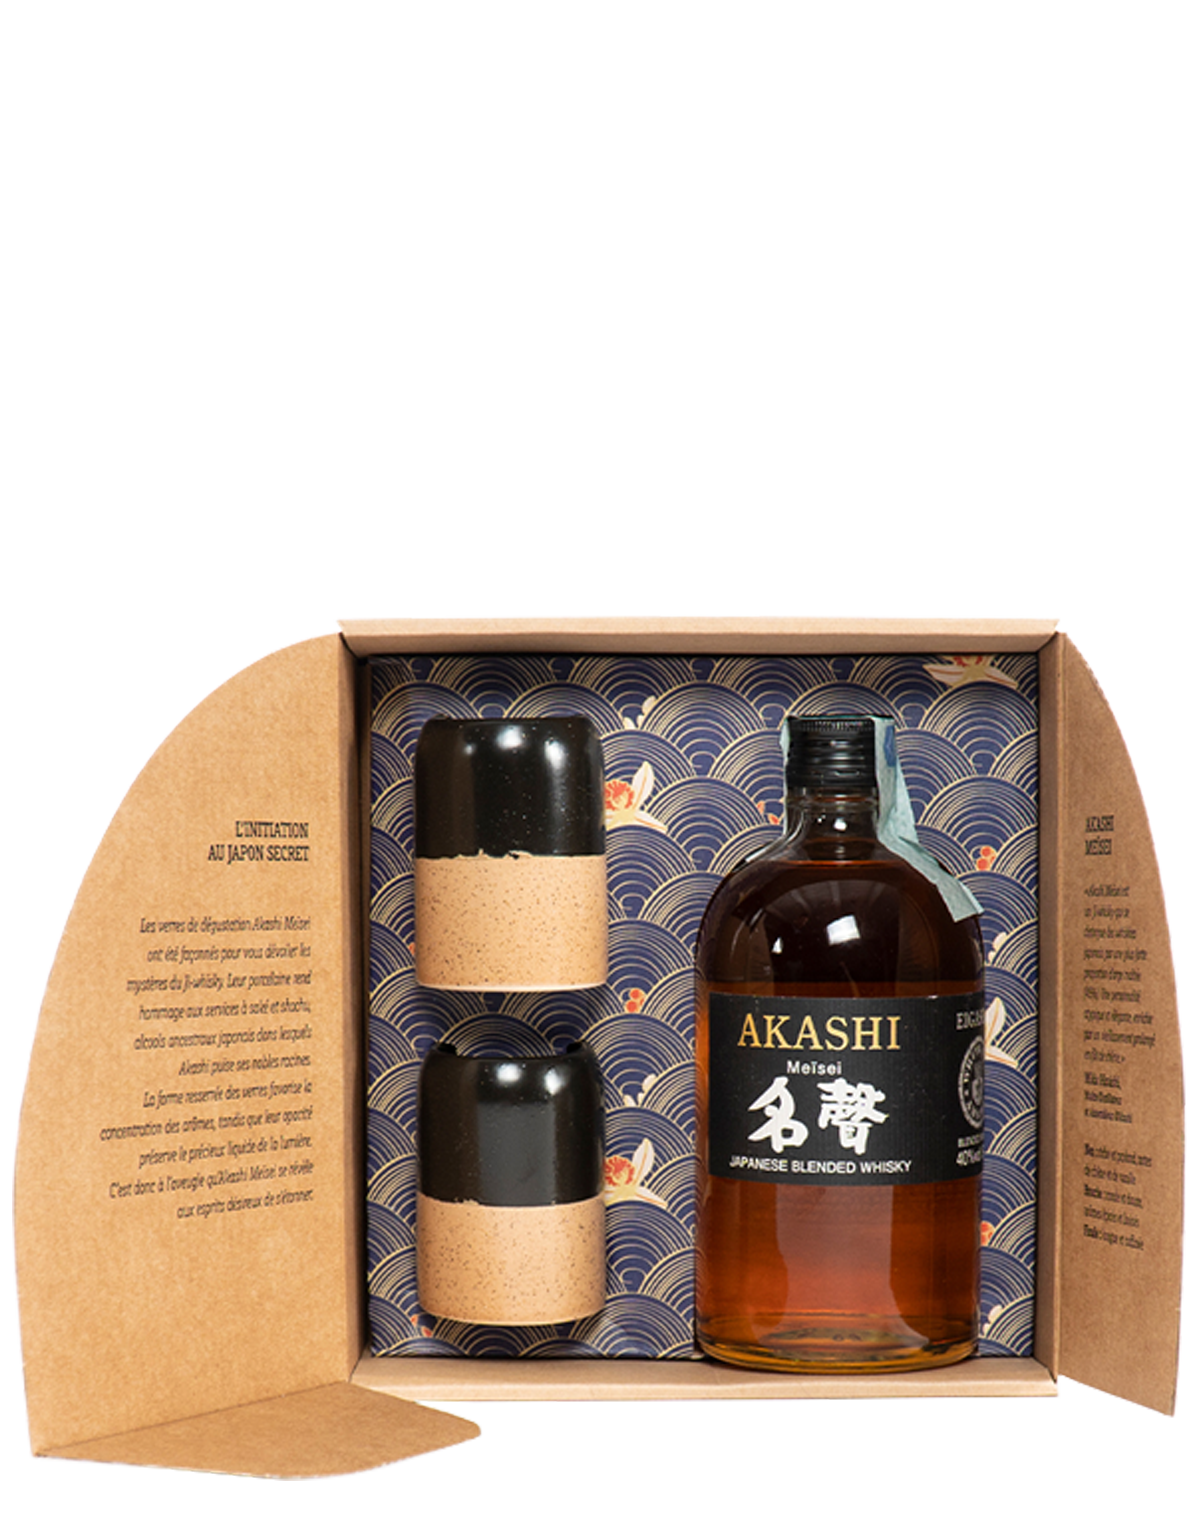 Akashi Meïsei Blended Japanese Whisky White Oak